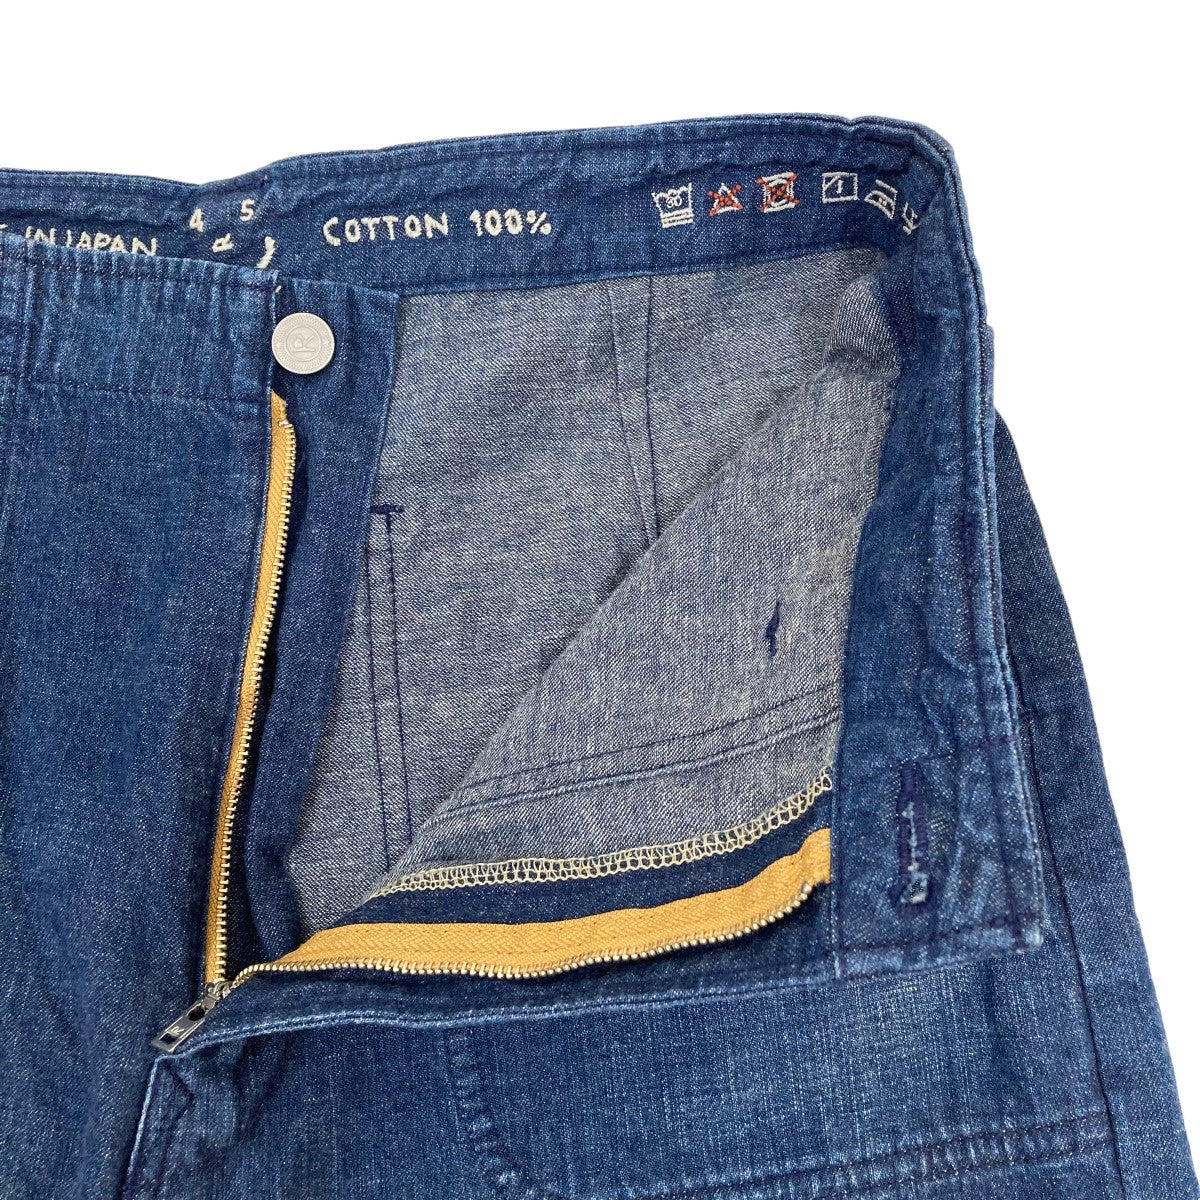 【新座買蔵】【試着のみ】45R 麦デニムのシャルロットペインターパンツ パンツ